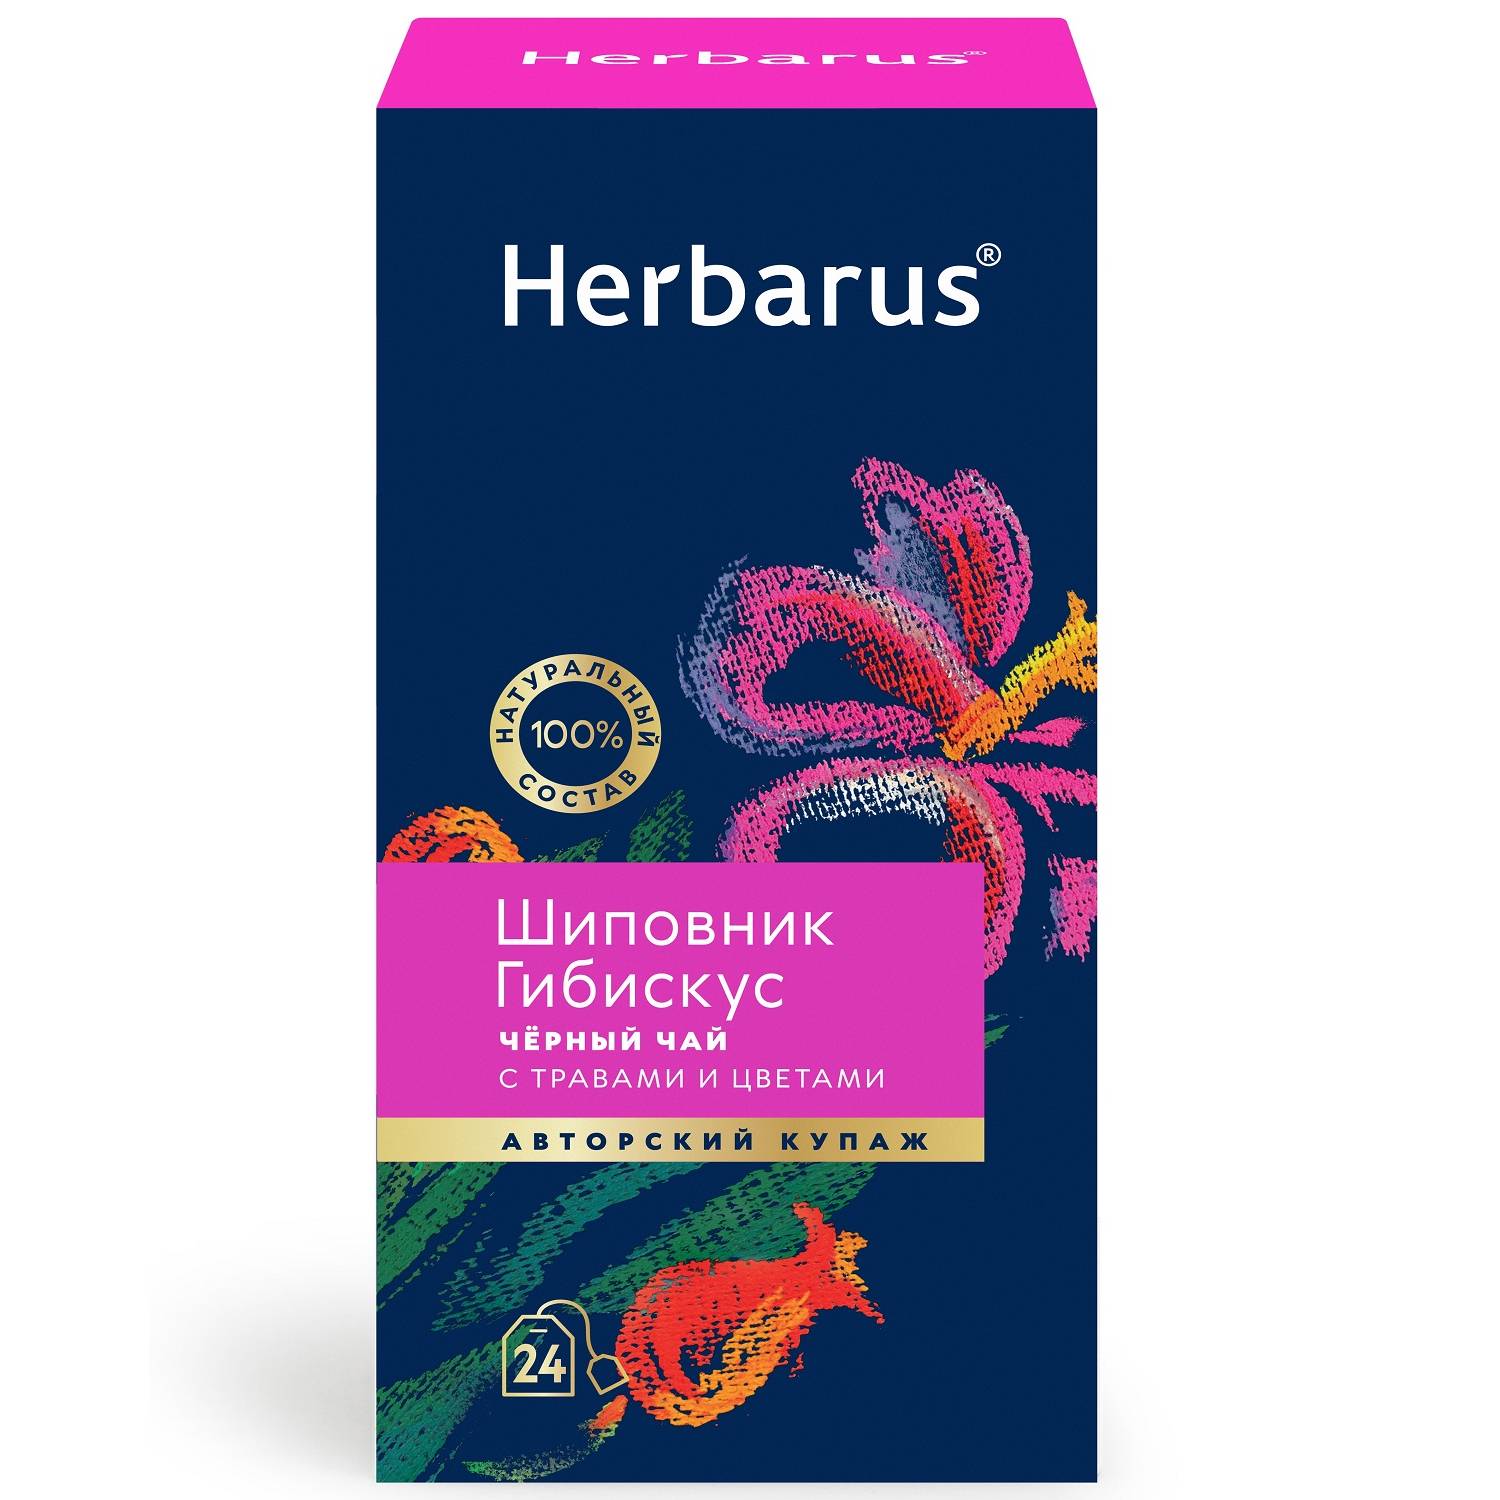 Herbarus Черный час с травами и цветами Шиповник и гибискус, 24 пакетика х 2 г (Herbarus, Чай с добавками)